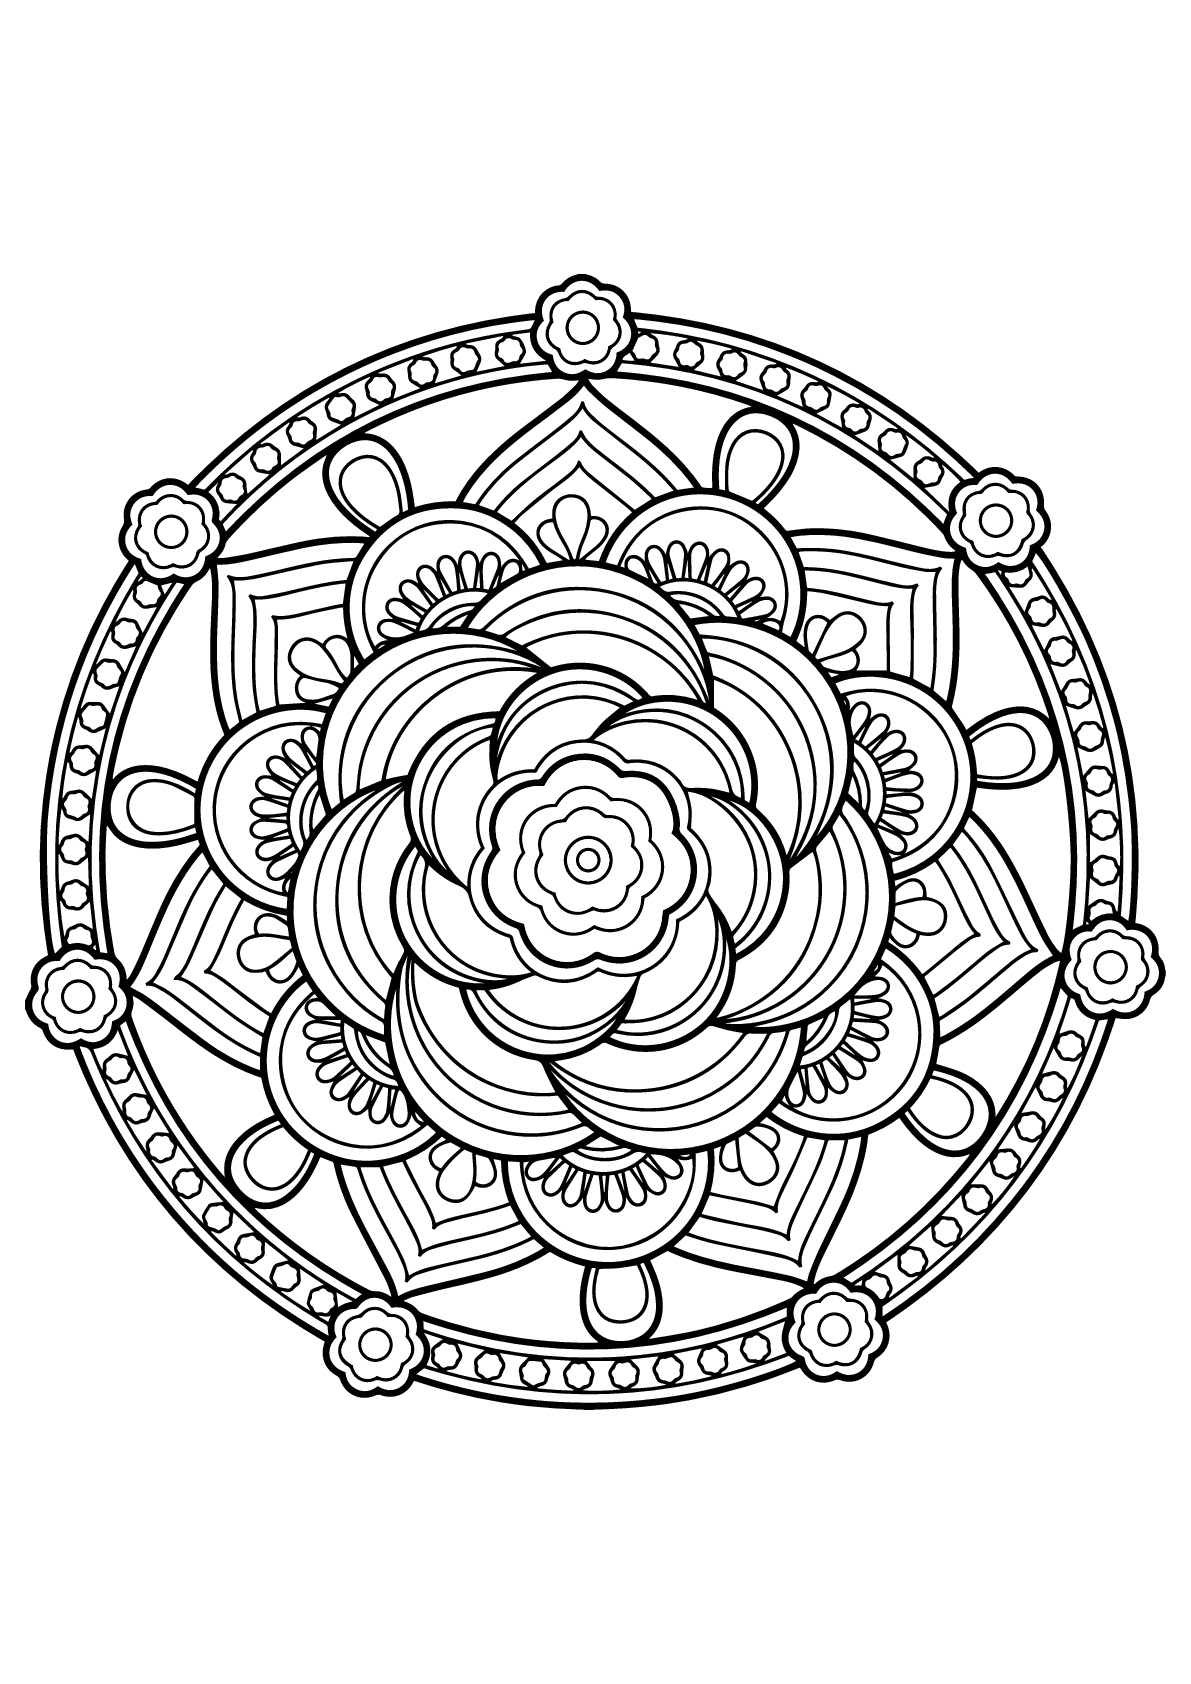 Mandala com padrões florais do Livro de colorir grátis para adultos